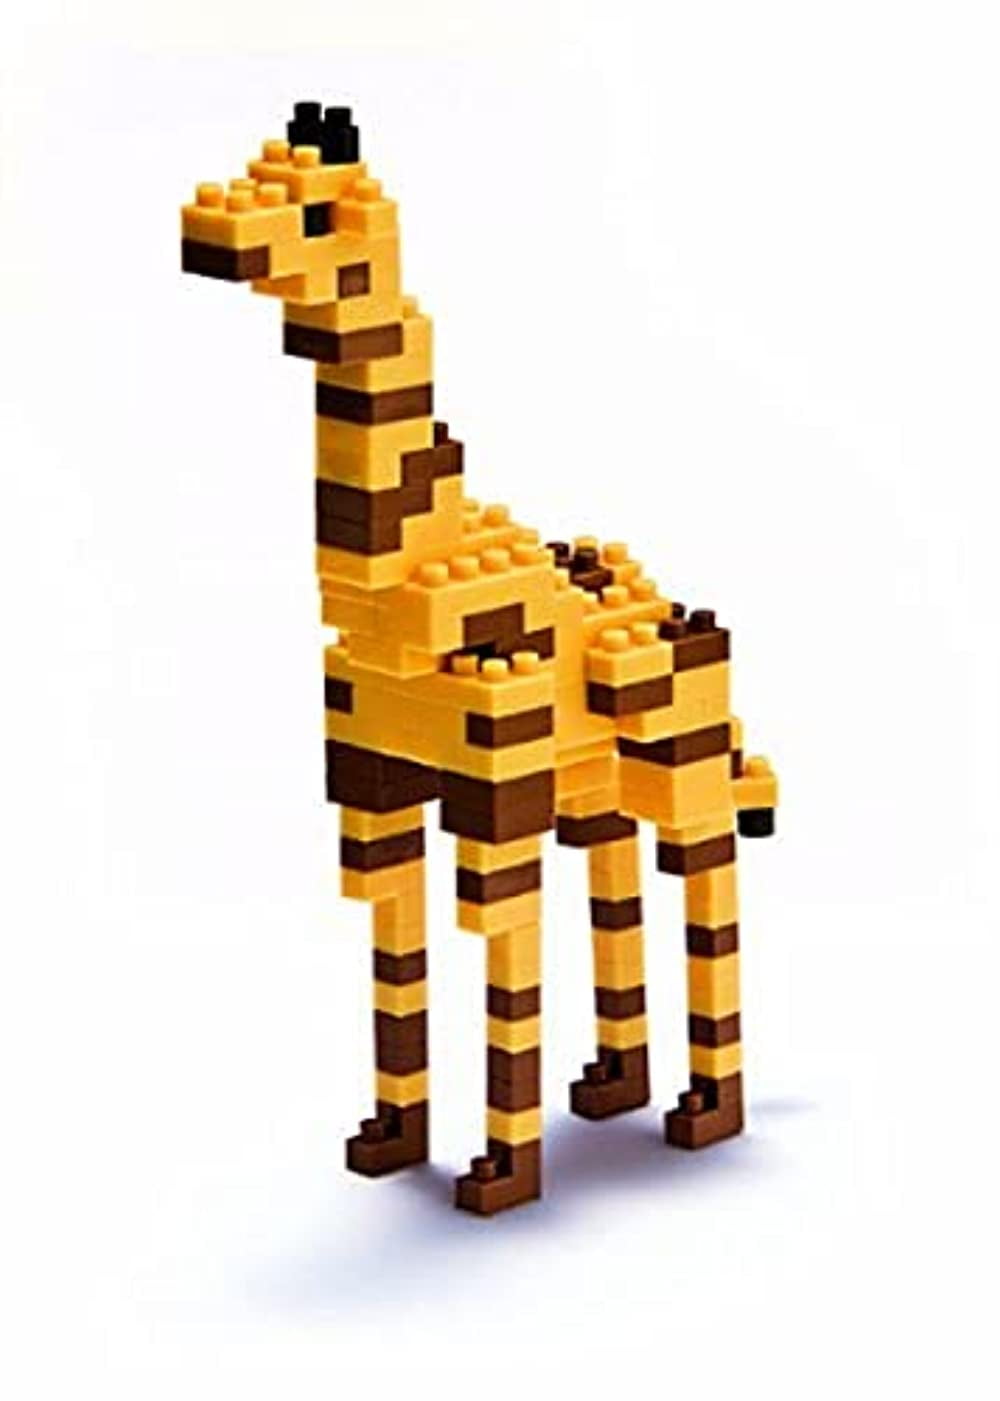 New LEGO Building Set with People Geoffrey the Giraffe 40077 NIB 